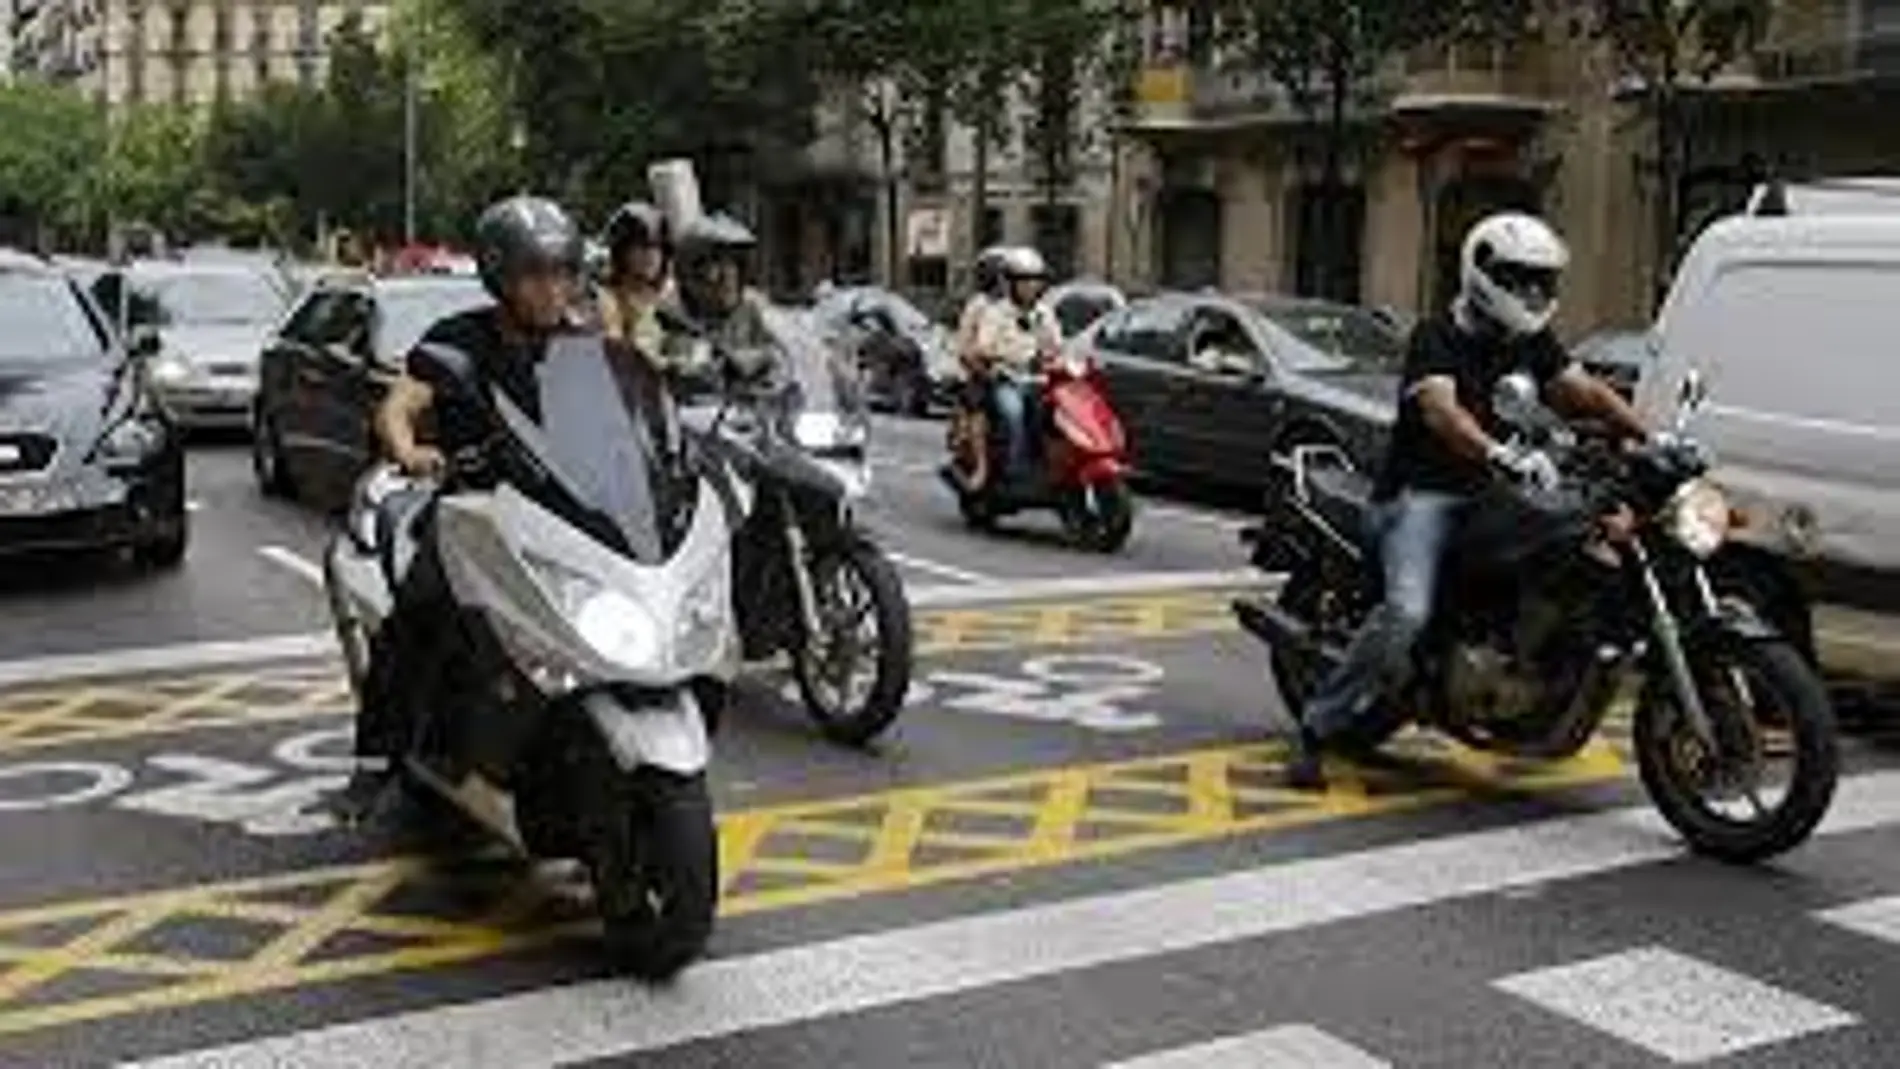 Mototicletas en una calle de Barcelona